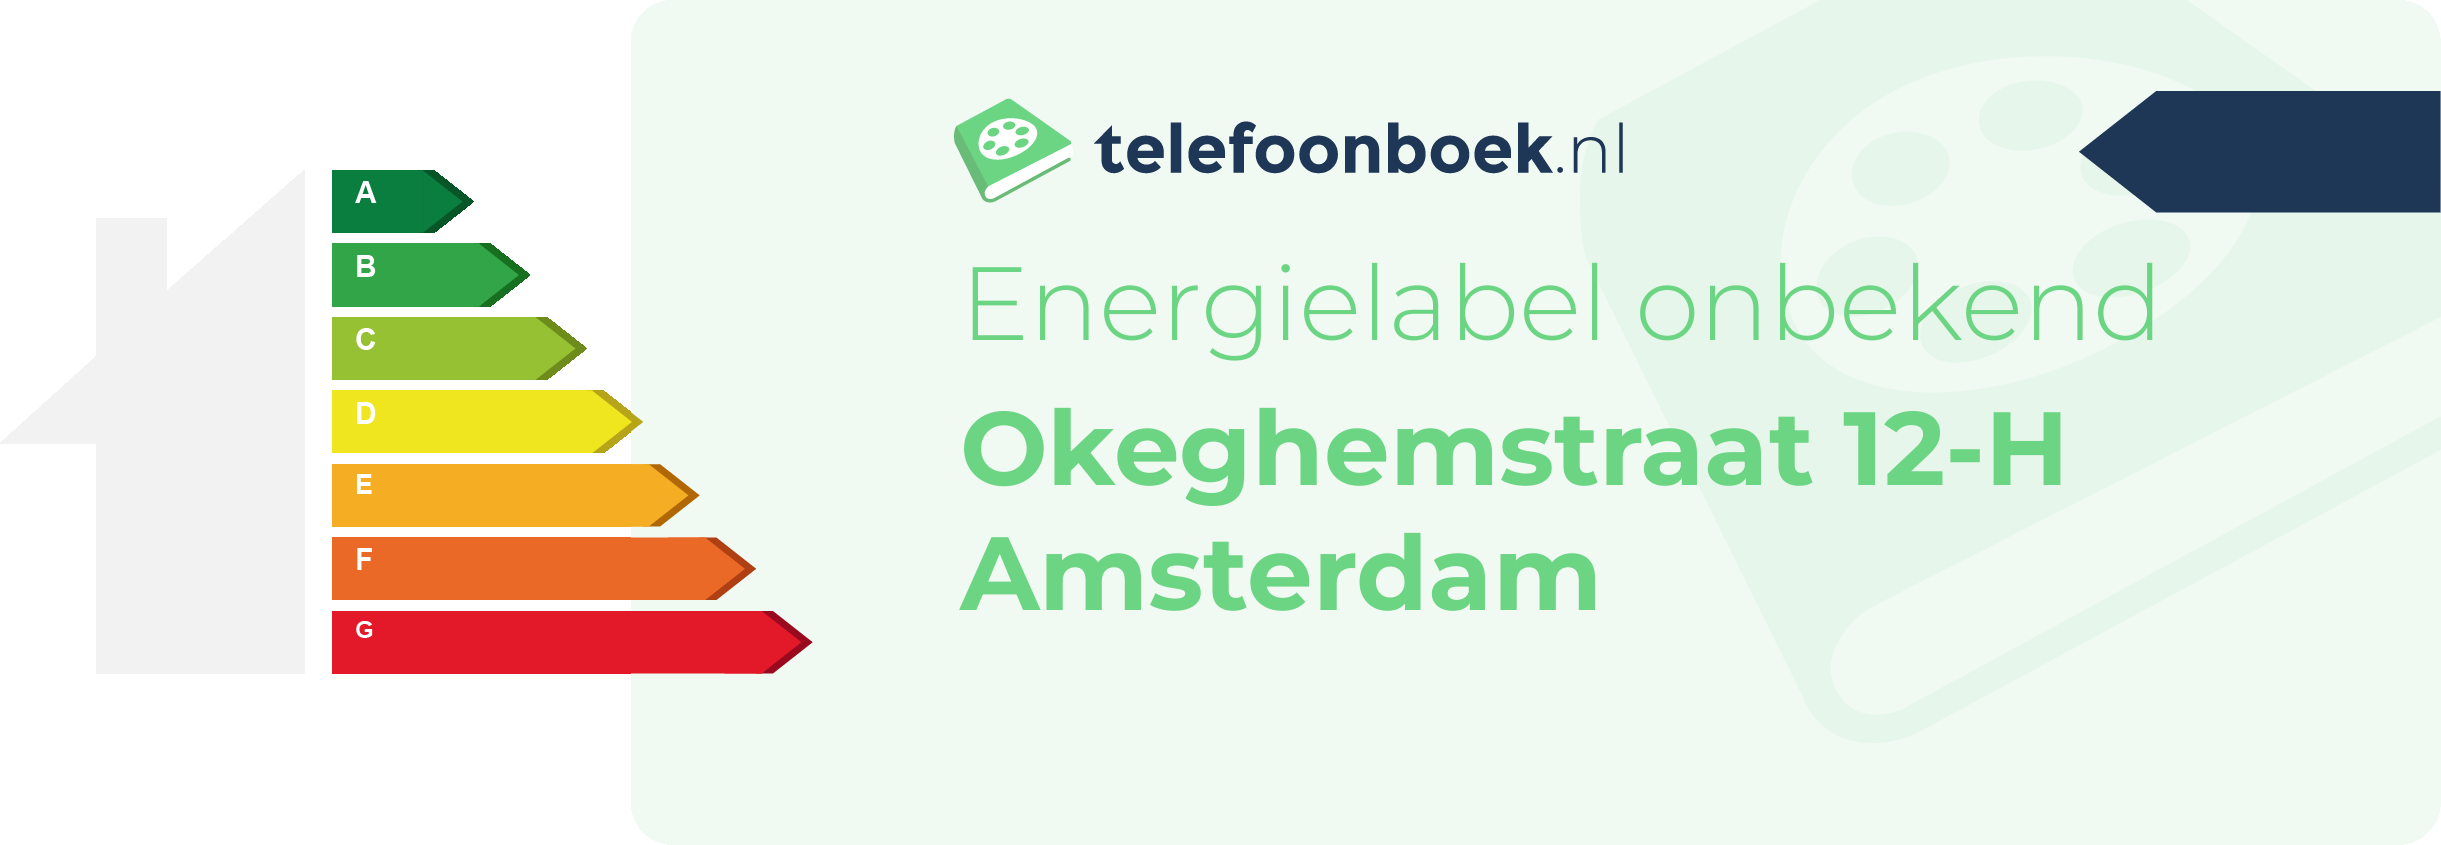 Energielabel Okeghemstraat 12-H Amsterdam